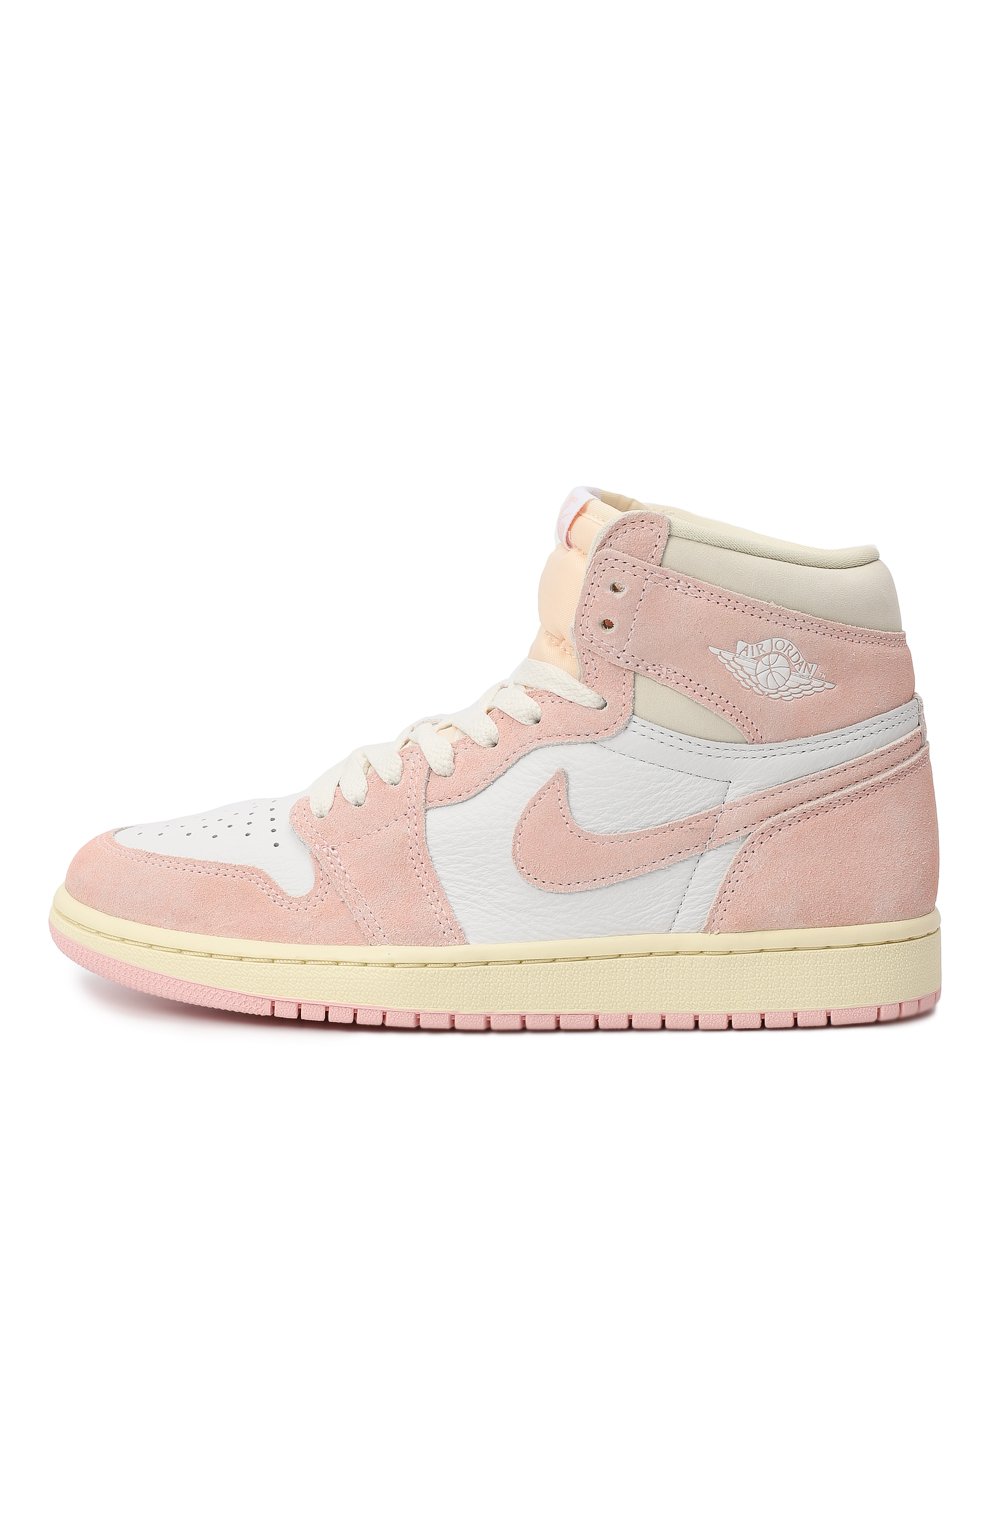 Кеды Air Jordan 1 Retro High OG "Washed Pink" | Nike | Розовый - 6